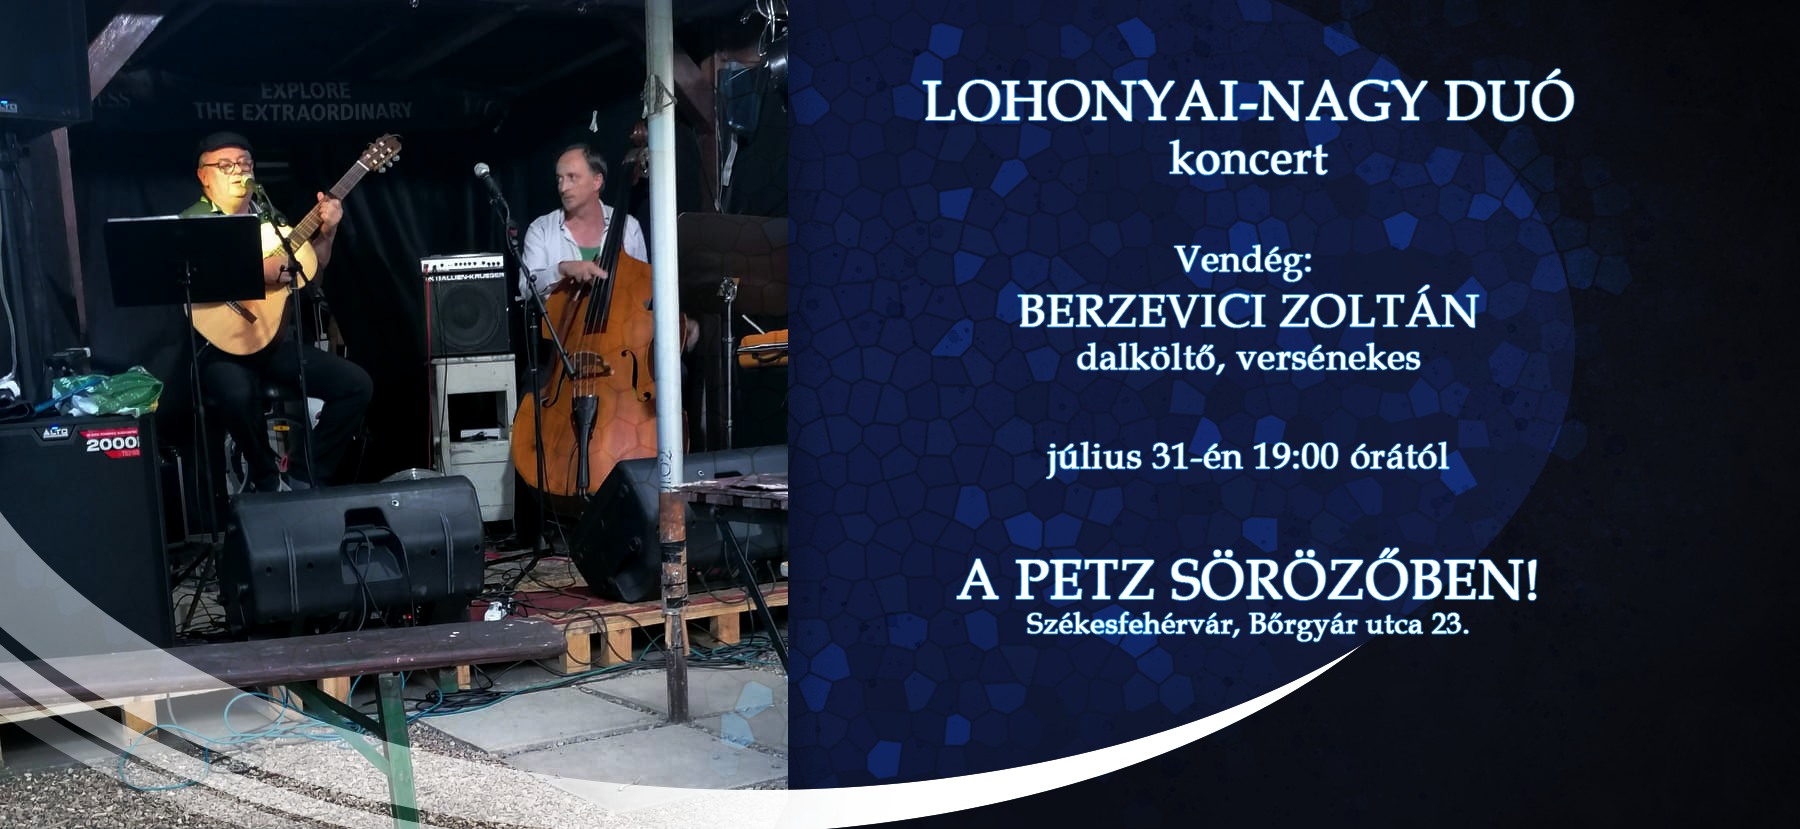 Lohonyai-Nagy duó koncert a Petz sörözőben vasárnap